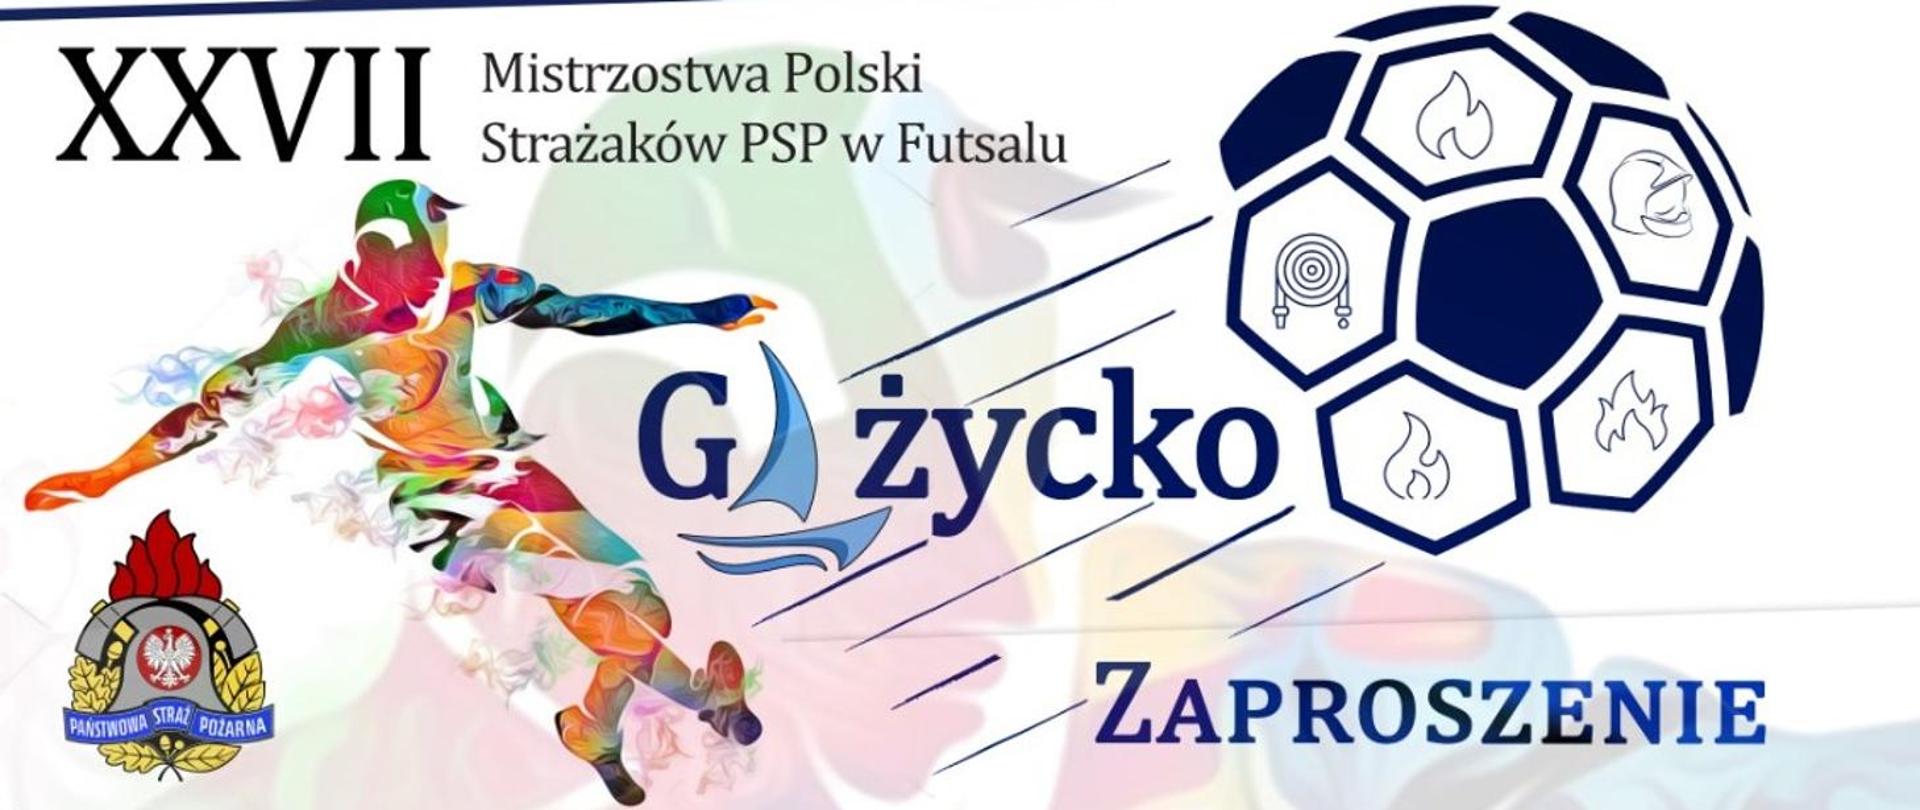 ZAPRASZAMY na XXVII Mistrzostwa Polski Strażaków Państwowej Straży Pożarnej w Futsalu – Giżycko 2023